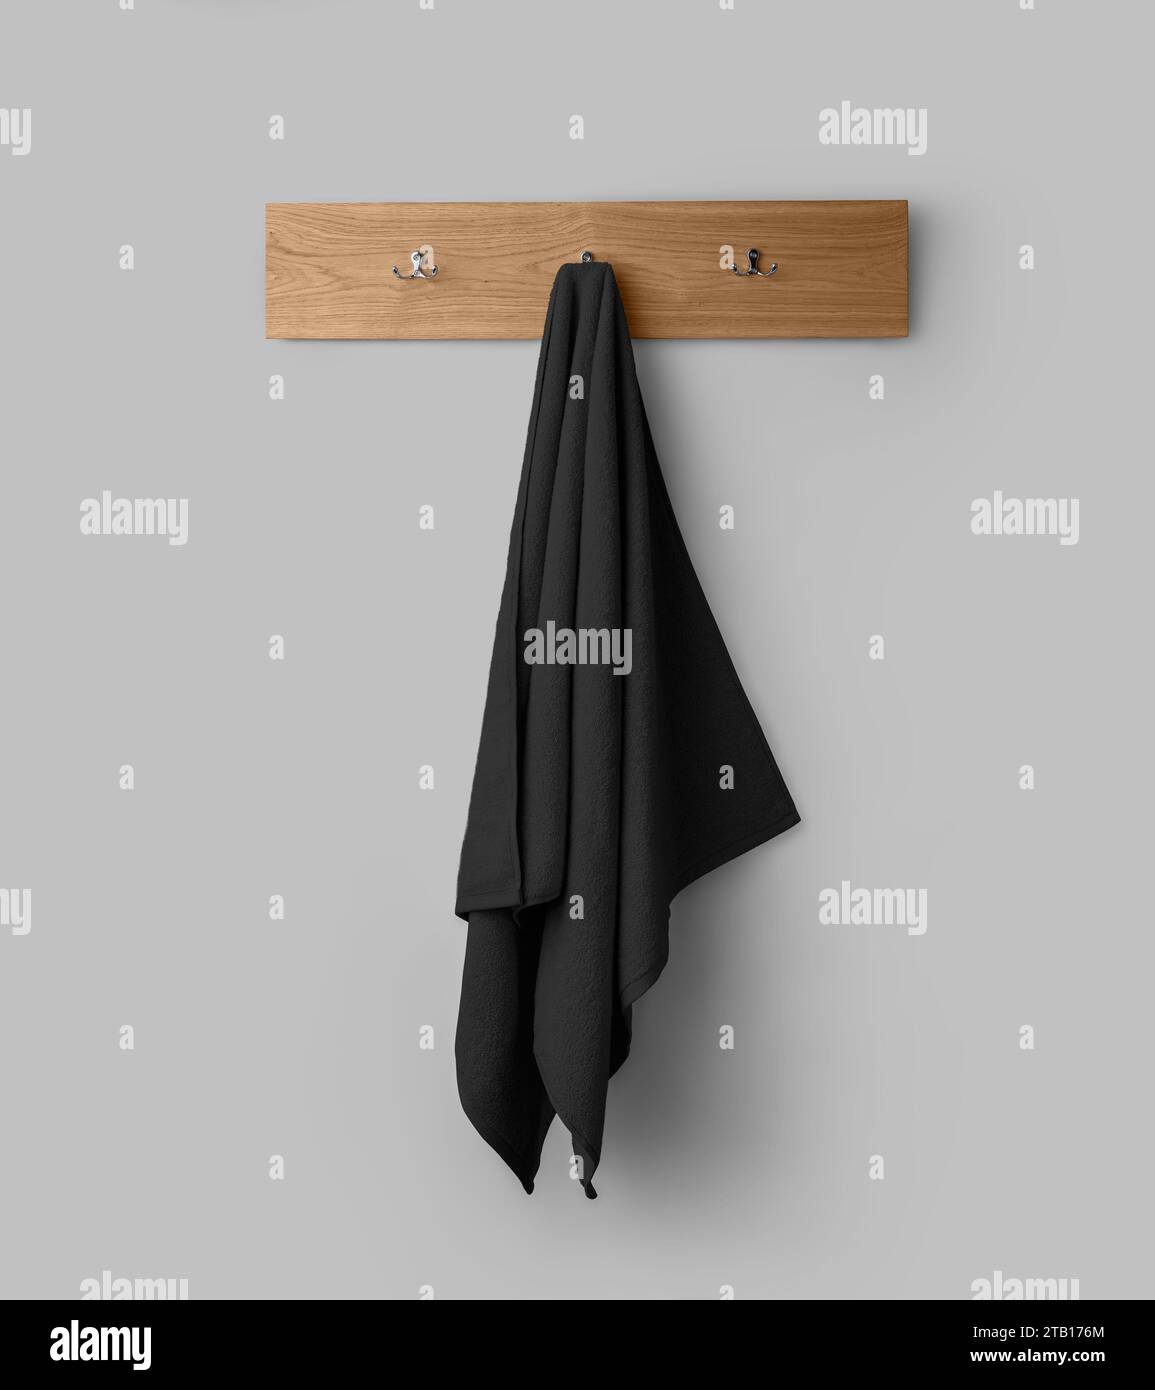 Maquette d'une serviette noire éponge sur un cintre en bois, serviette suspendue pour la conception, l'image de marque, la présentation. Décoration intérieure pour essuyer. Modèle de serviette isola Banque D'Images